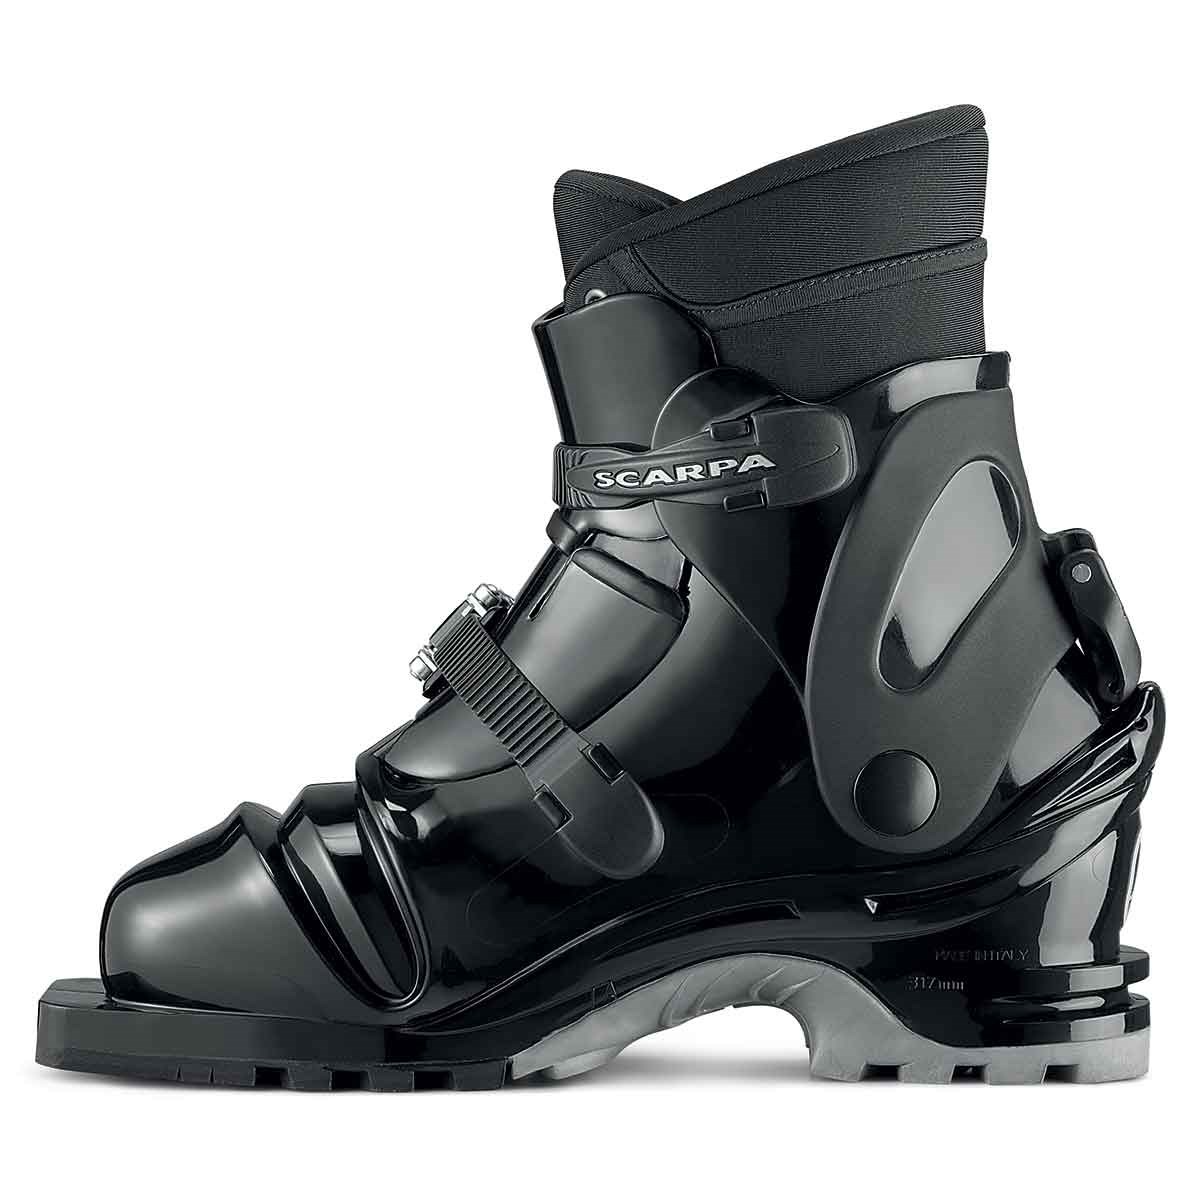 Telemarkové boty Scarpa T4 black Scarpa 10017274 L-11